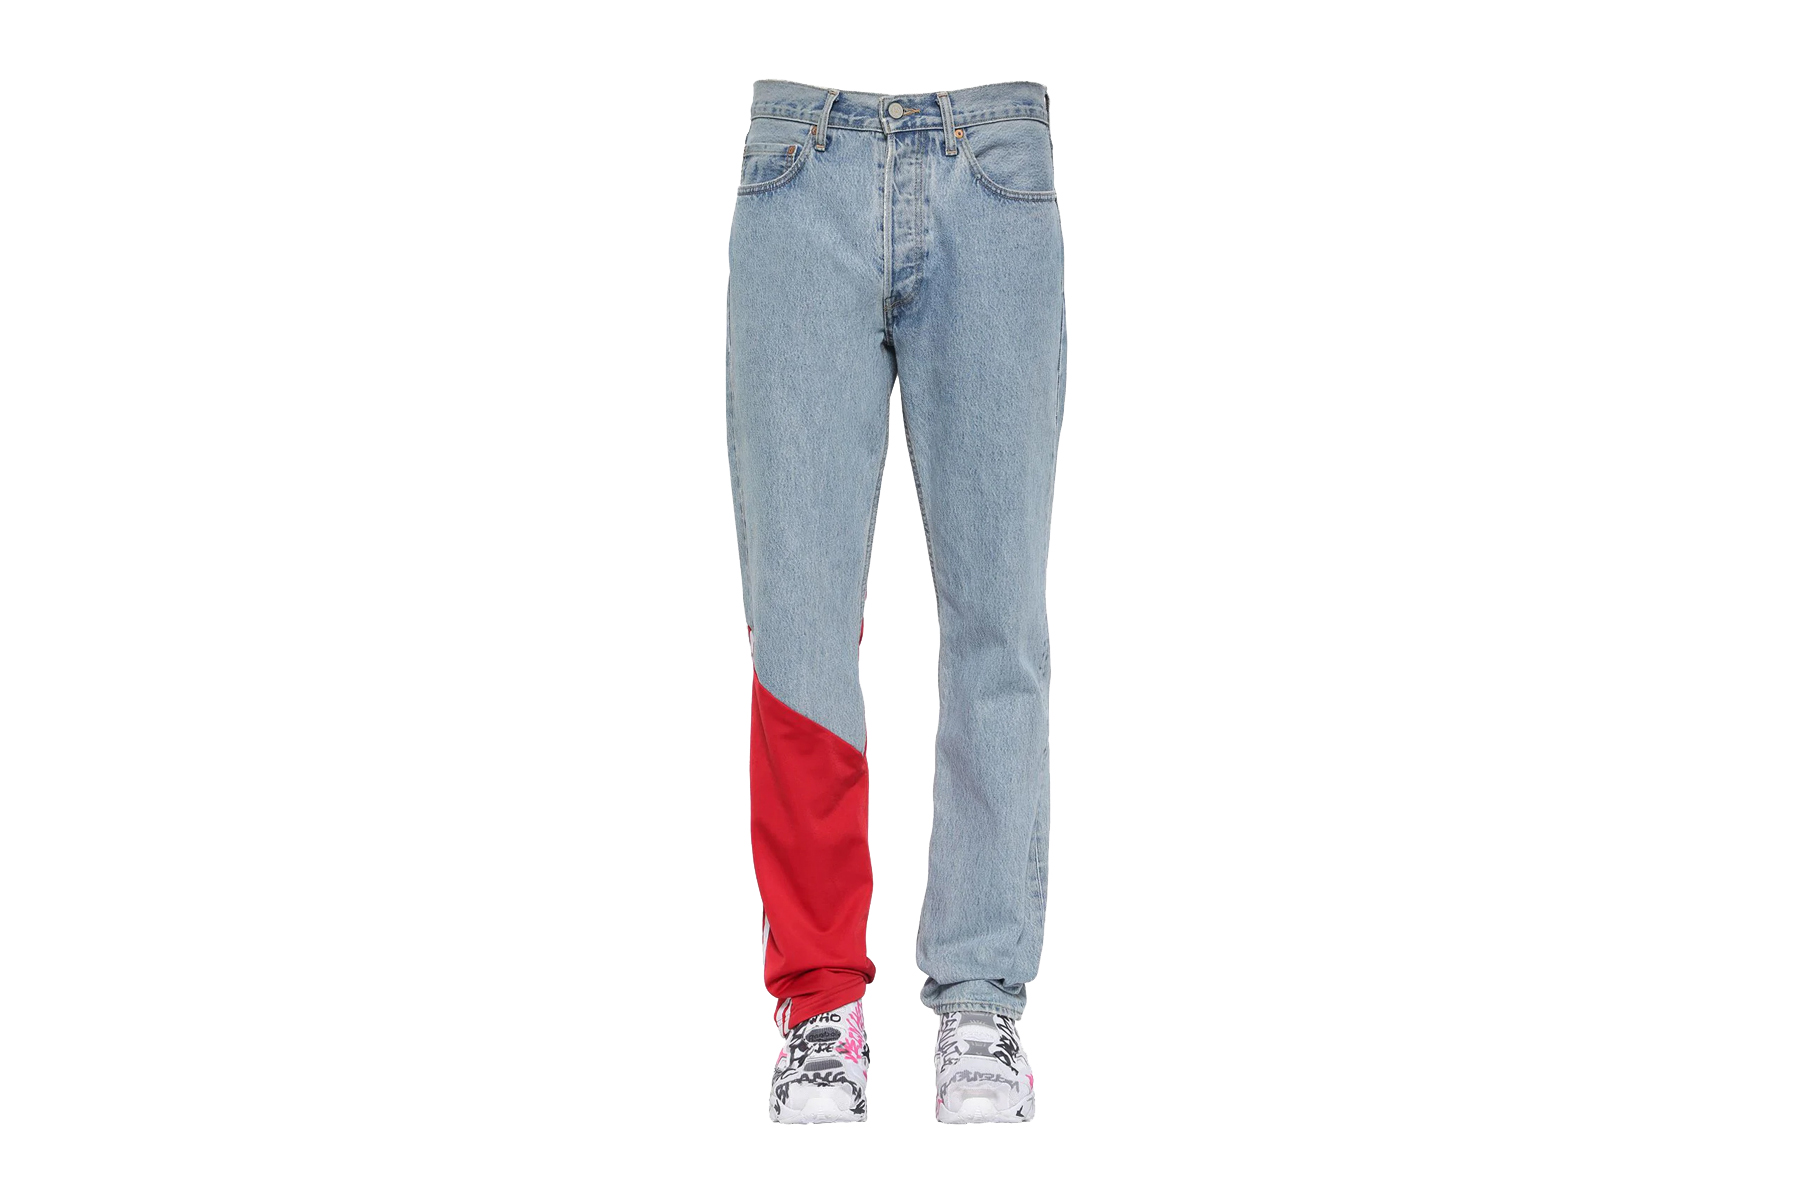 Vetements x Levi's Jersey Detail Denim Jeans Release | HYPEBEAST